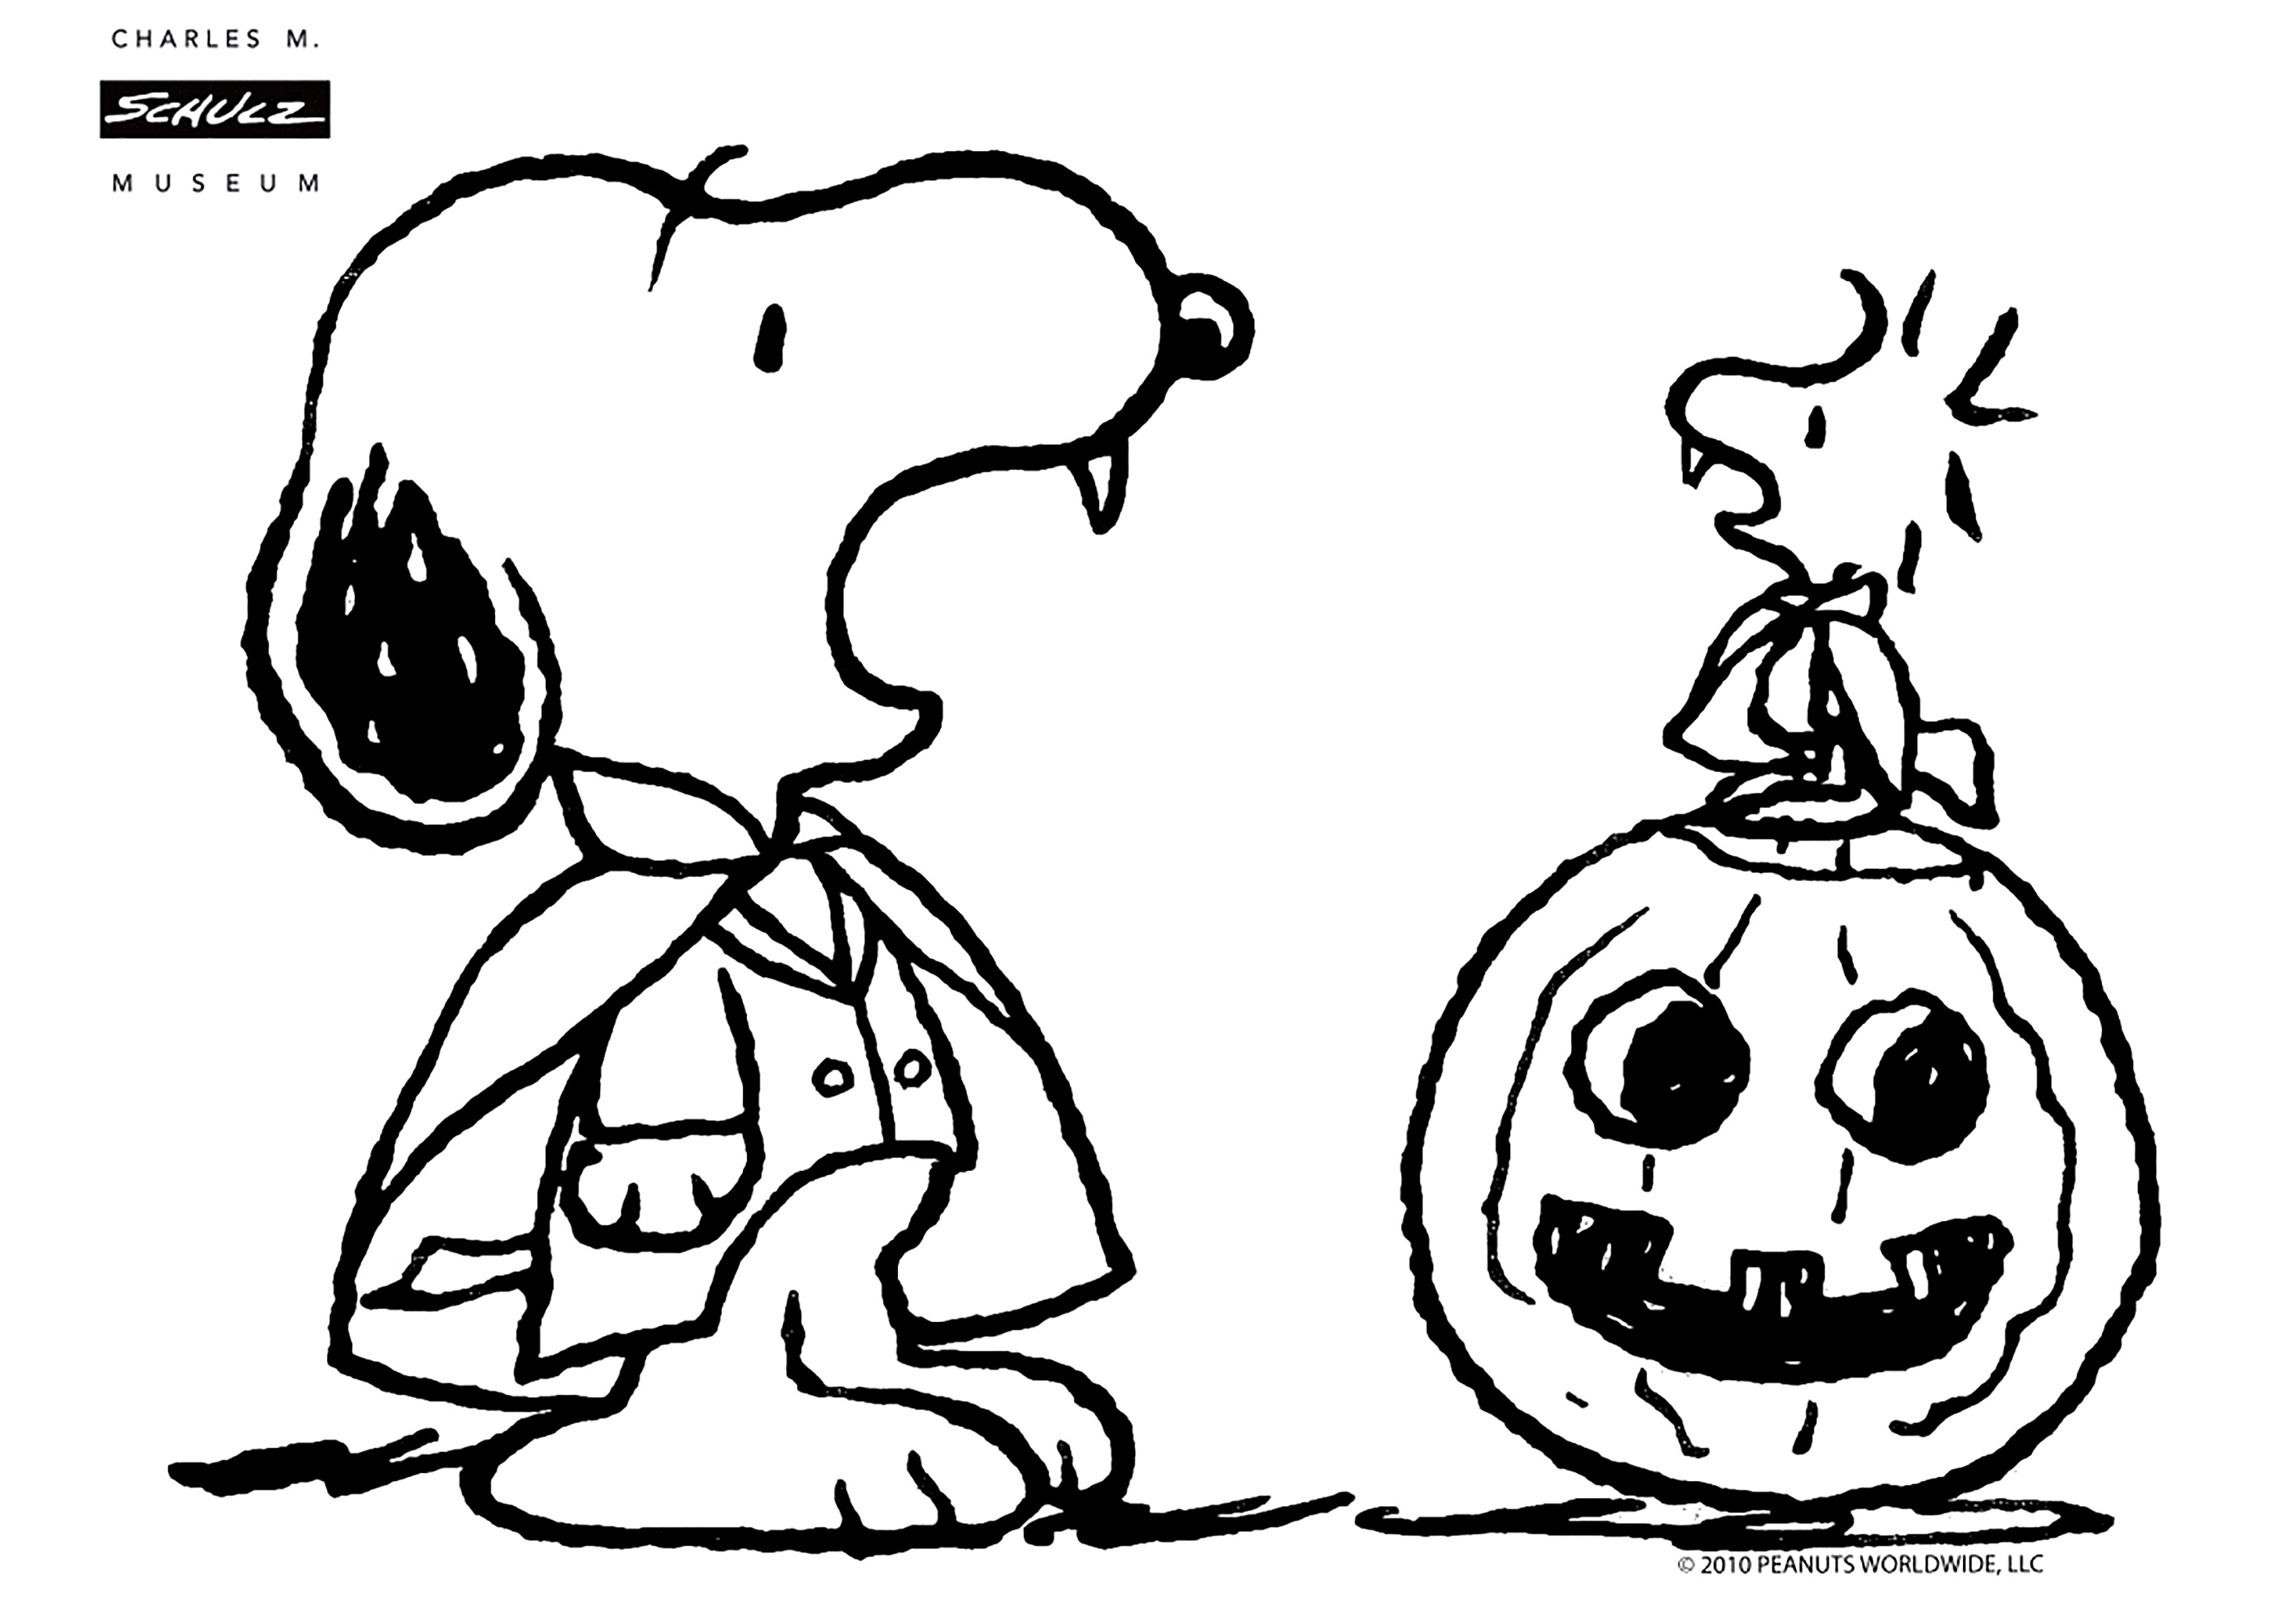 Snoopy vestido de vampiro, con su amigo Woodstock sobre una calabaza